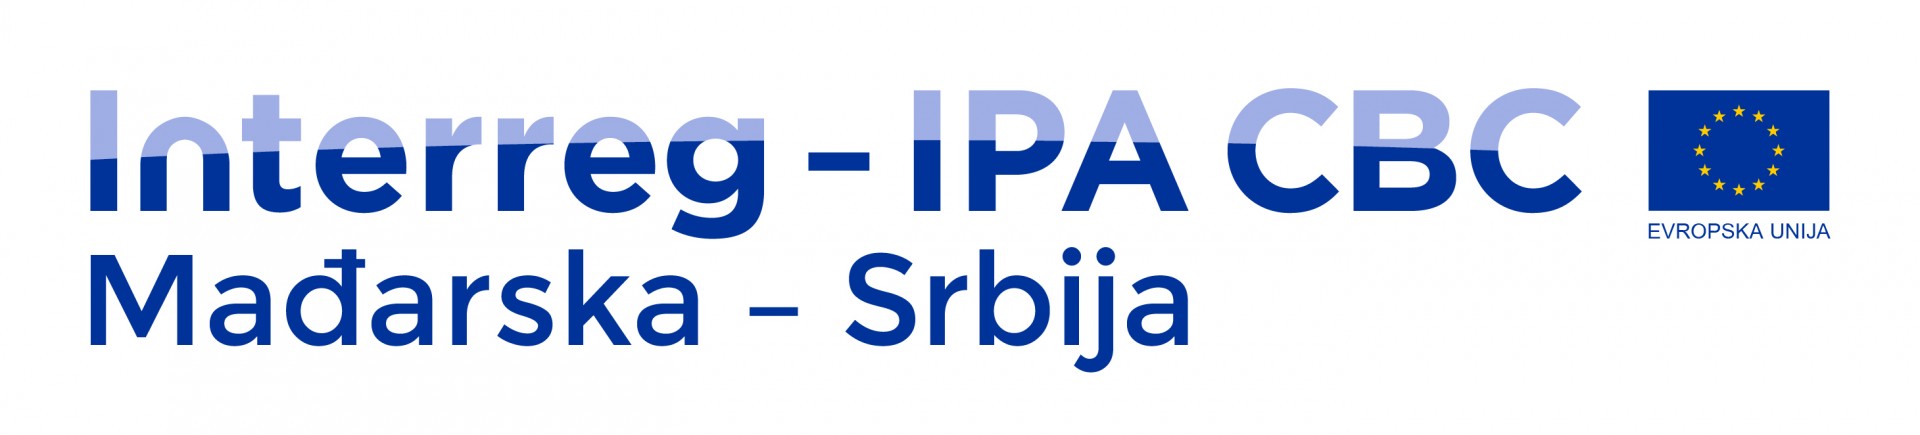 GORE-LEVO-Interreg_IPA_CBC_HuSrb_SRB_RGB Prekogranična saradnja madjarskih i srpskih partnera u projektu